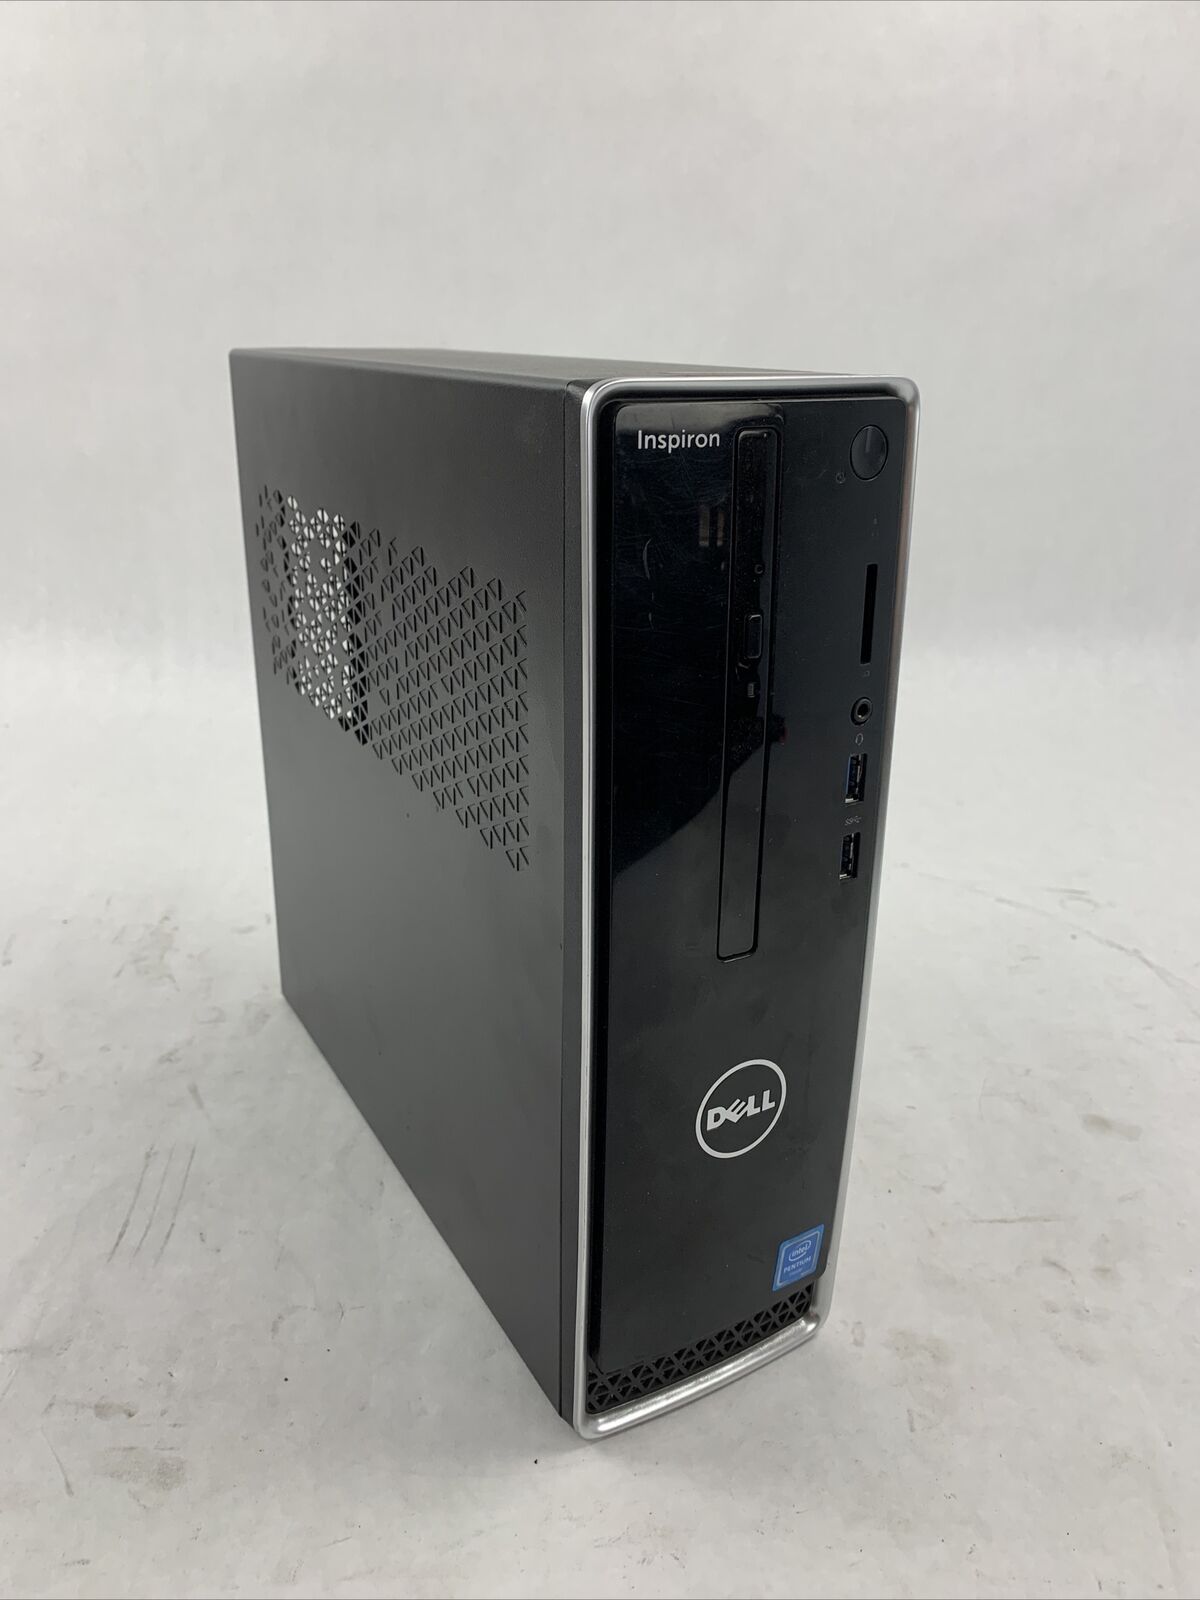 Dell Inspiron 3252 SFF Intel Pentium N3700 1.8GHz 4GB RAM No HDD No OS